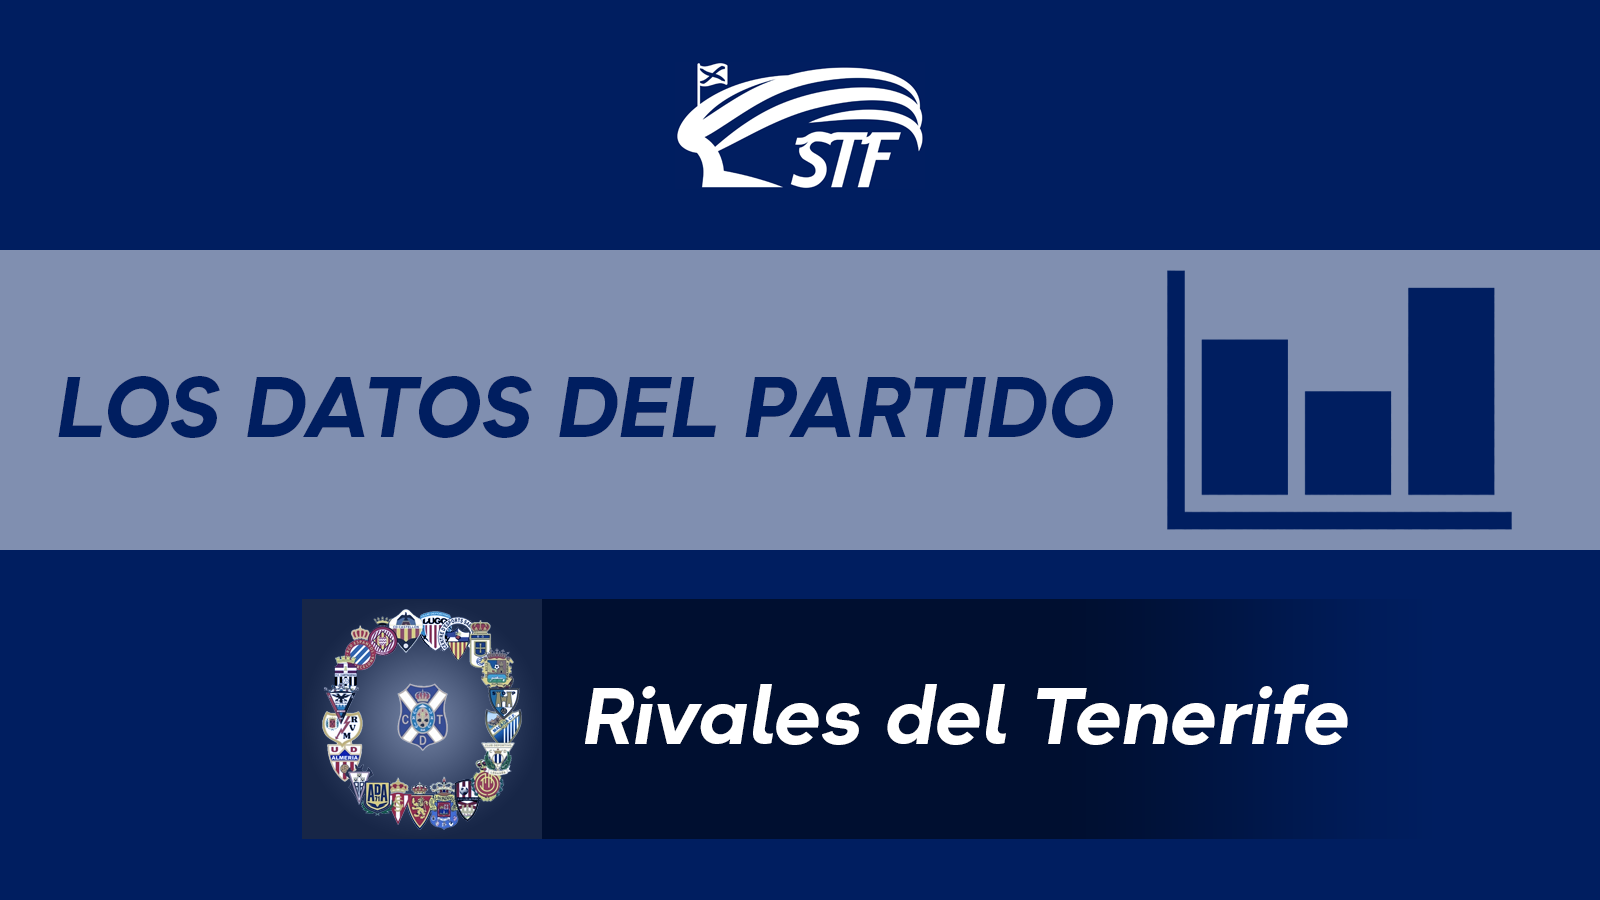 Los datos y curiosidades del CD Tenerife 0-0 CD Leganés